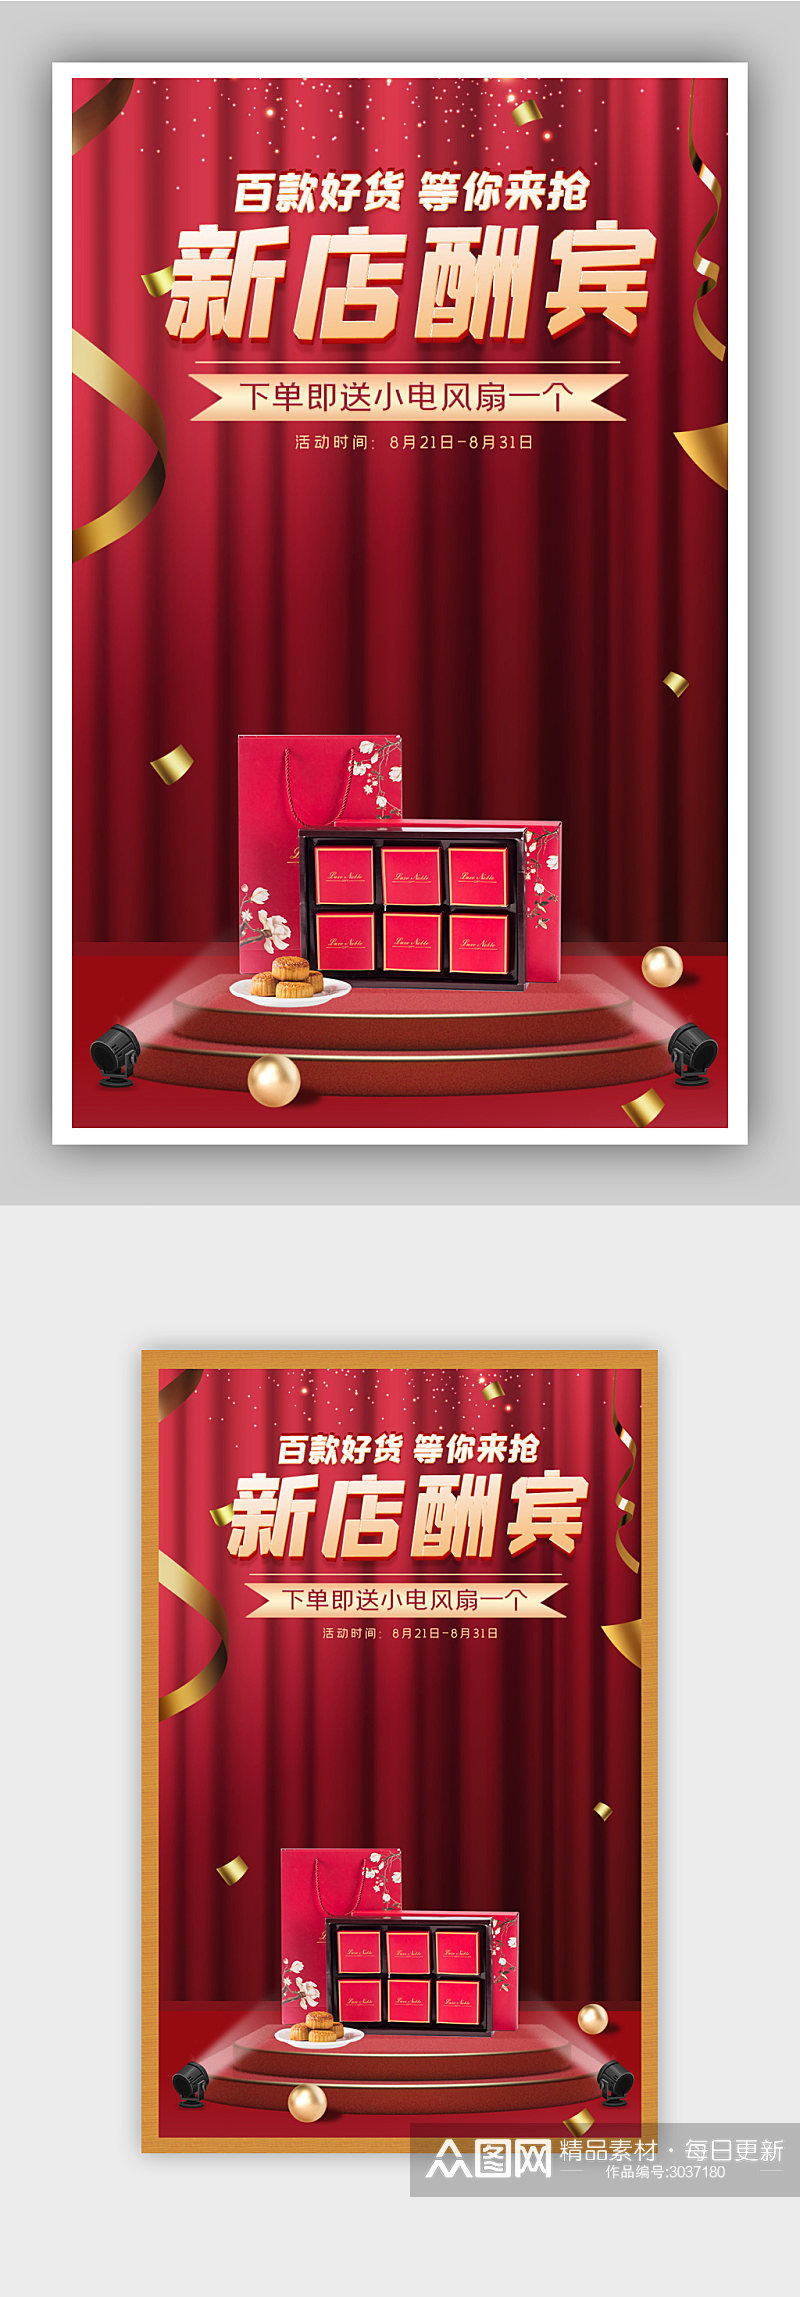 红色大气风格舞台幕布周年庆开业活动海报素材